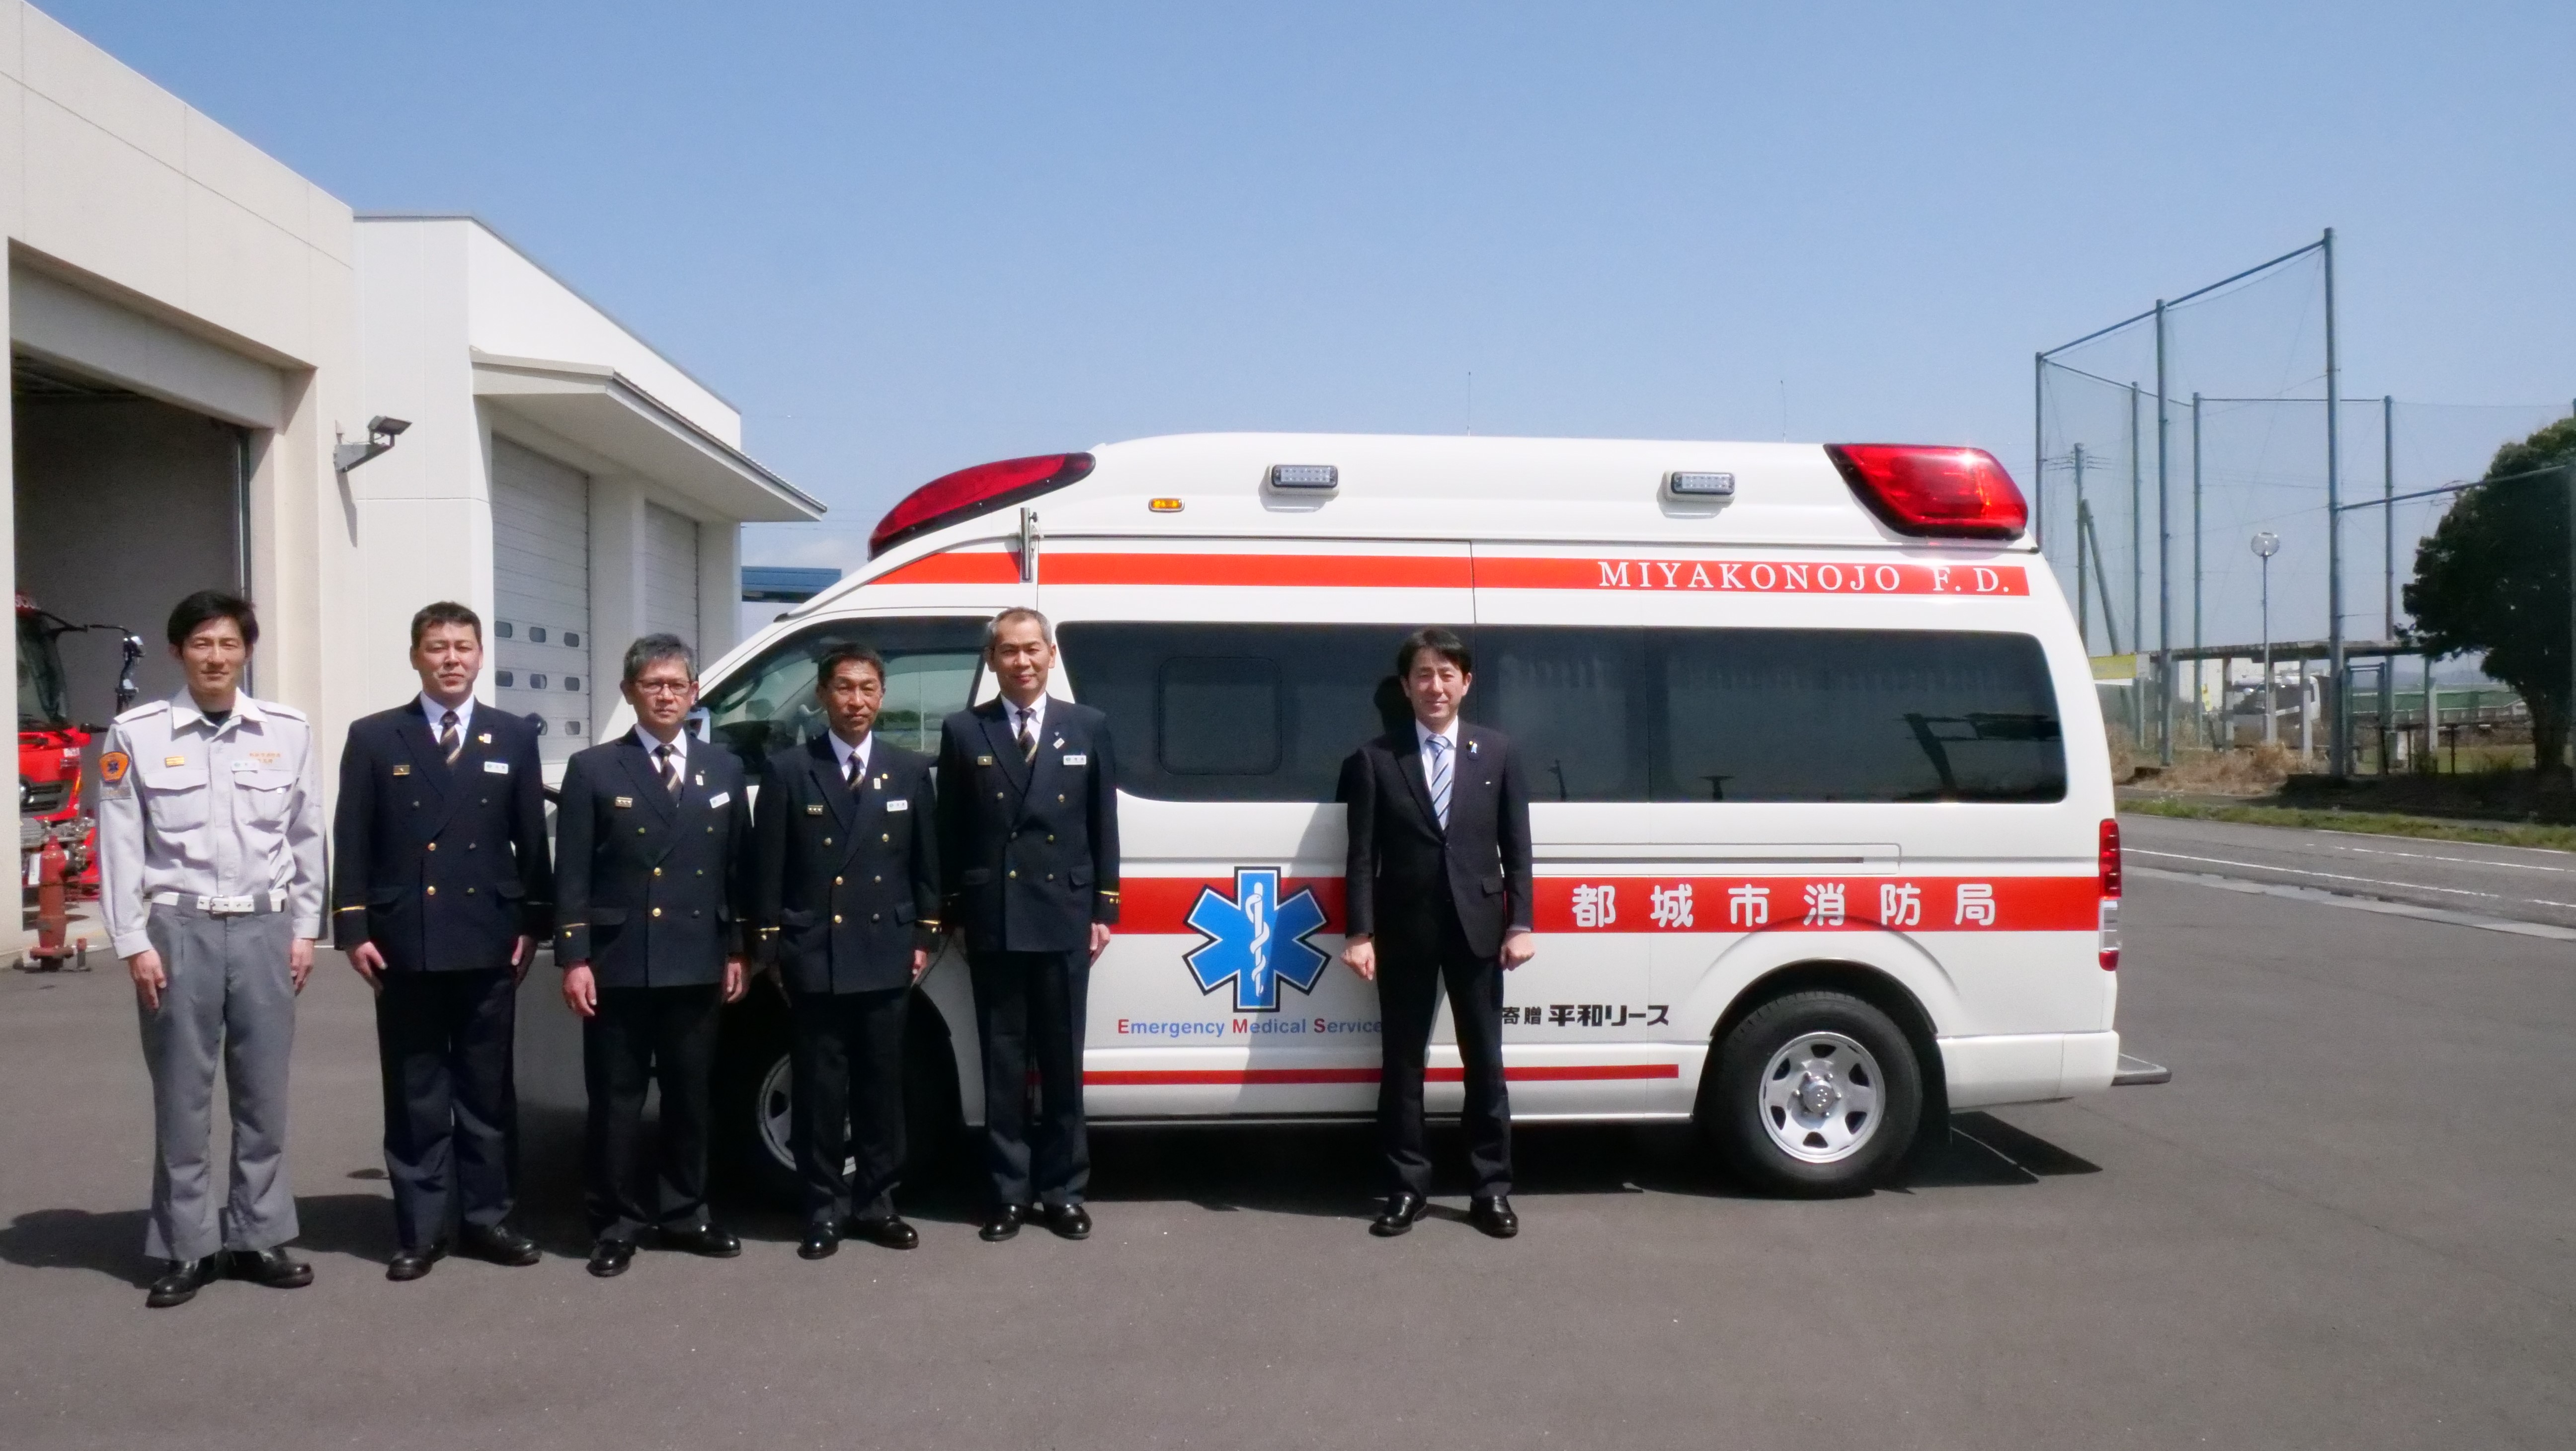 石川デジタル副大臣と北消防署関係者との集合写真。